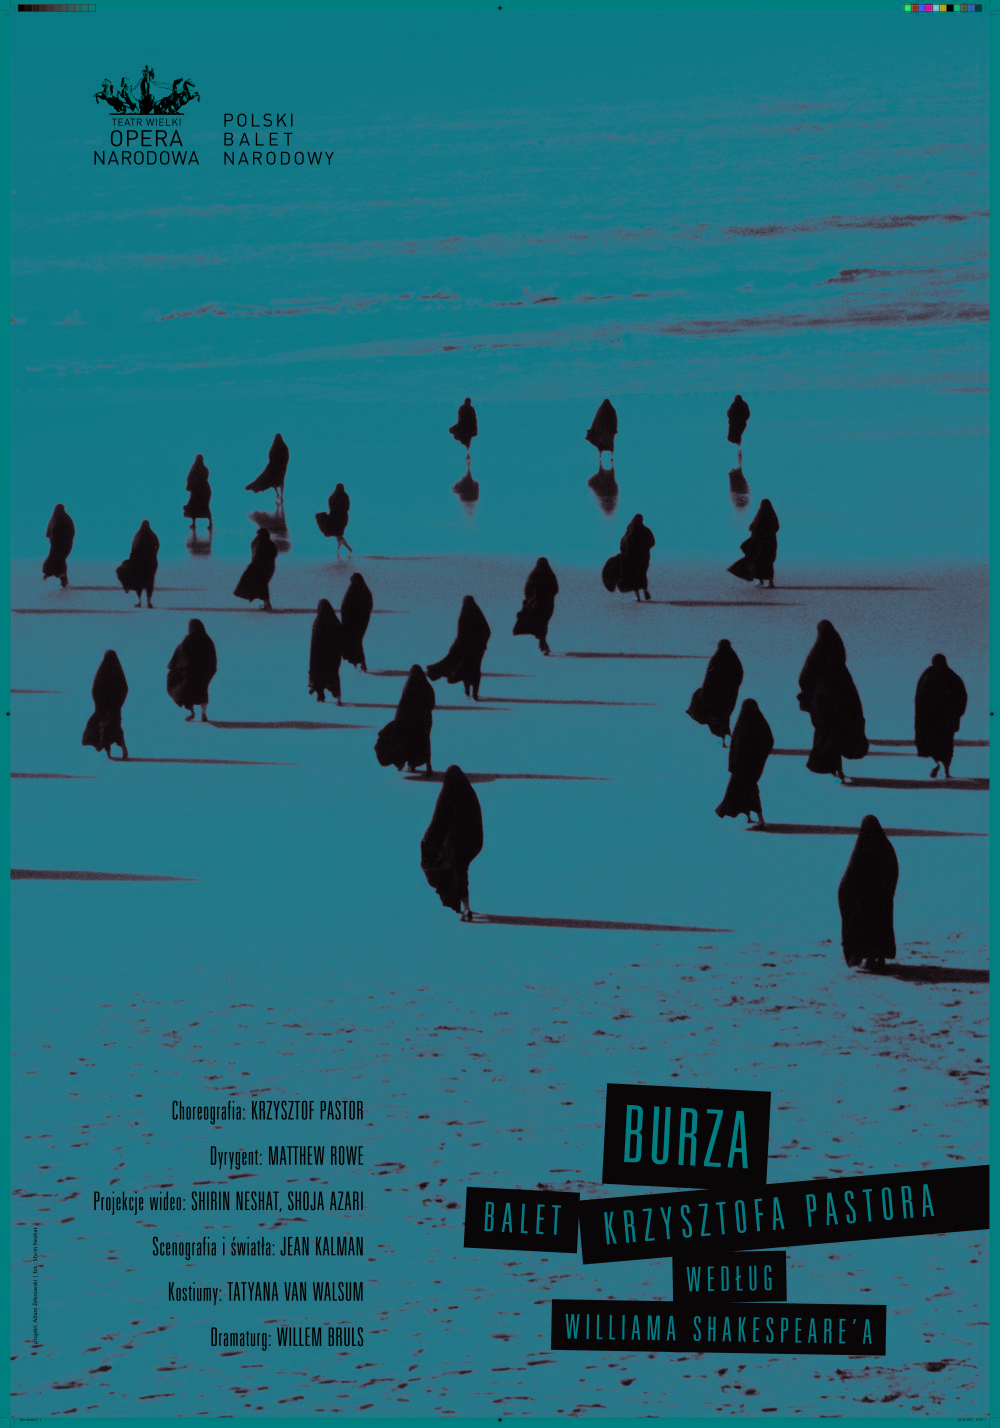 Plakat "Burza" Krzysztof Pastor według Williama Szekspira premiera polska 2016-04-09